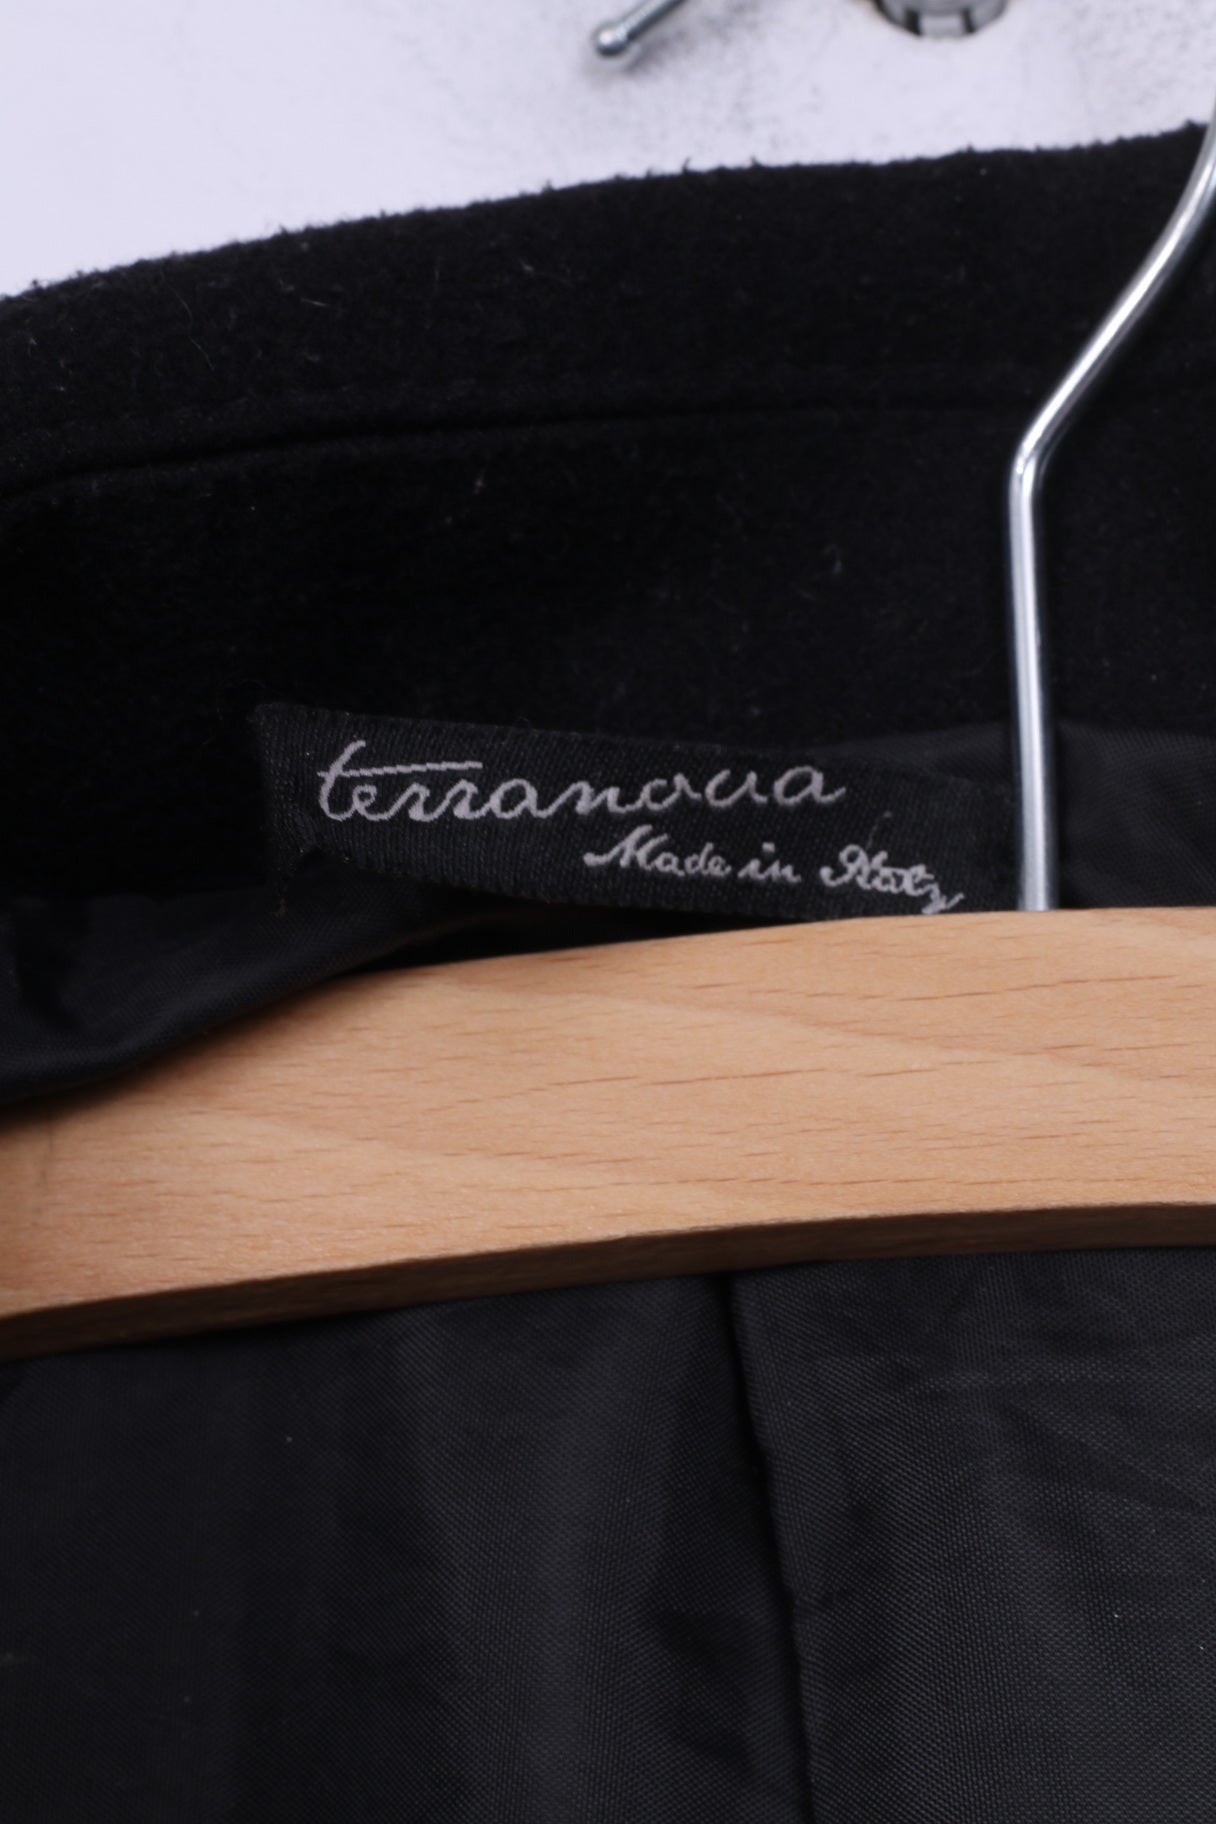 Terranova Womens M Cappotto Coat Jacket Nero Black Made in Italy Double Breasted